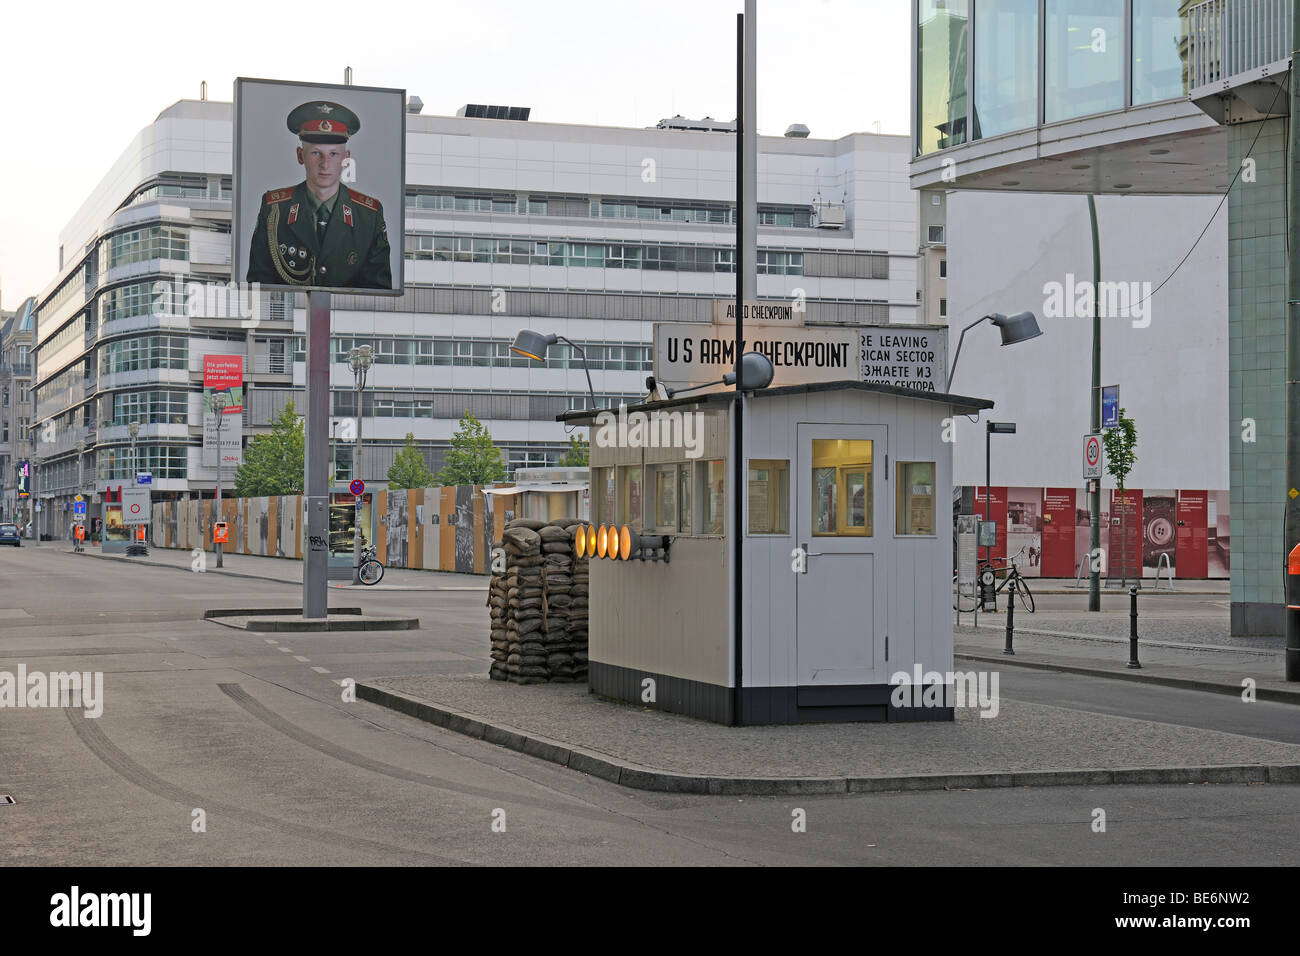 Ehemaliger Grenzübergang für Diplomaten in Berlin, Friedrichstraße Straße, Checkpoint Charlie, Berlin, Deutschland, Europa Stockfoto